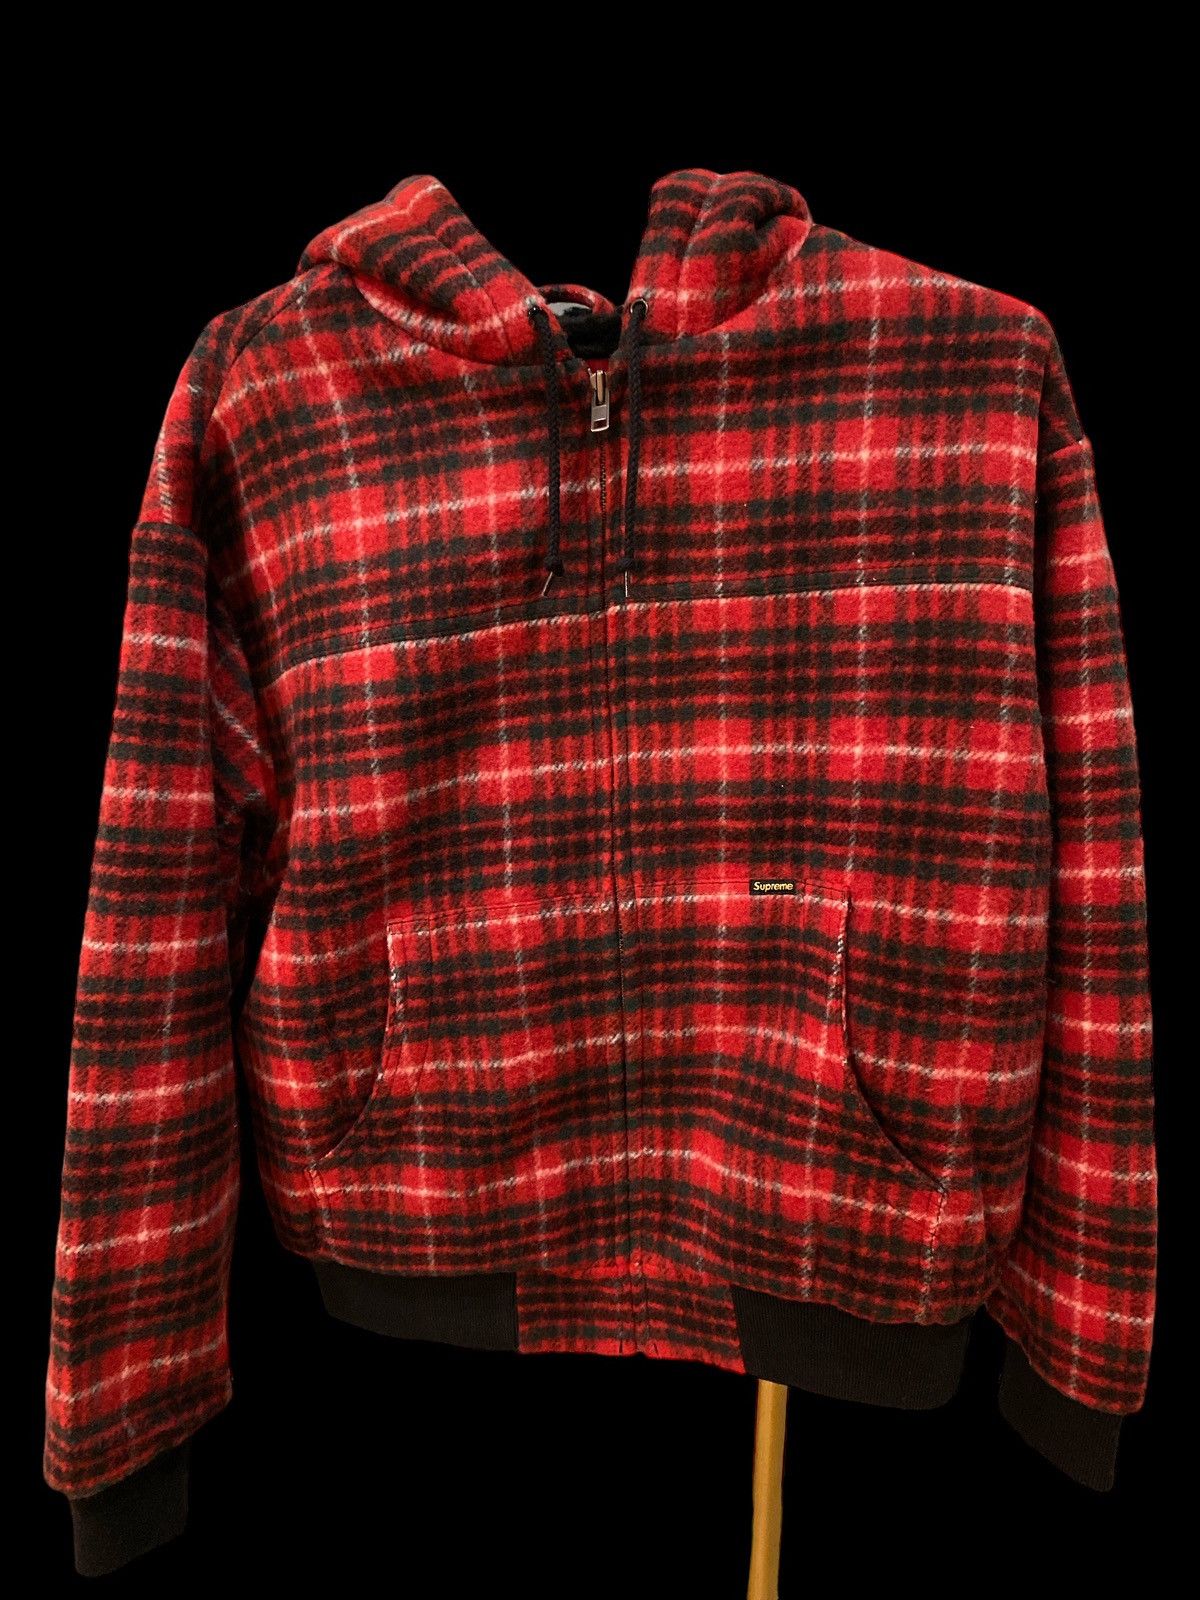 Supreme Supreme Plaid Wool Hooded Work Jacket Red/Black | Grailed